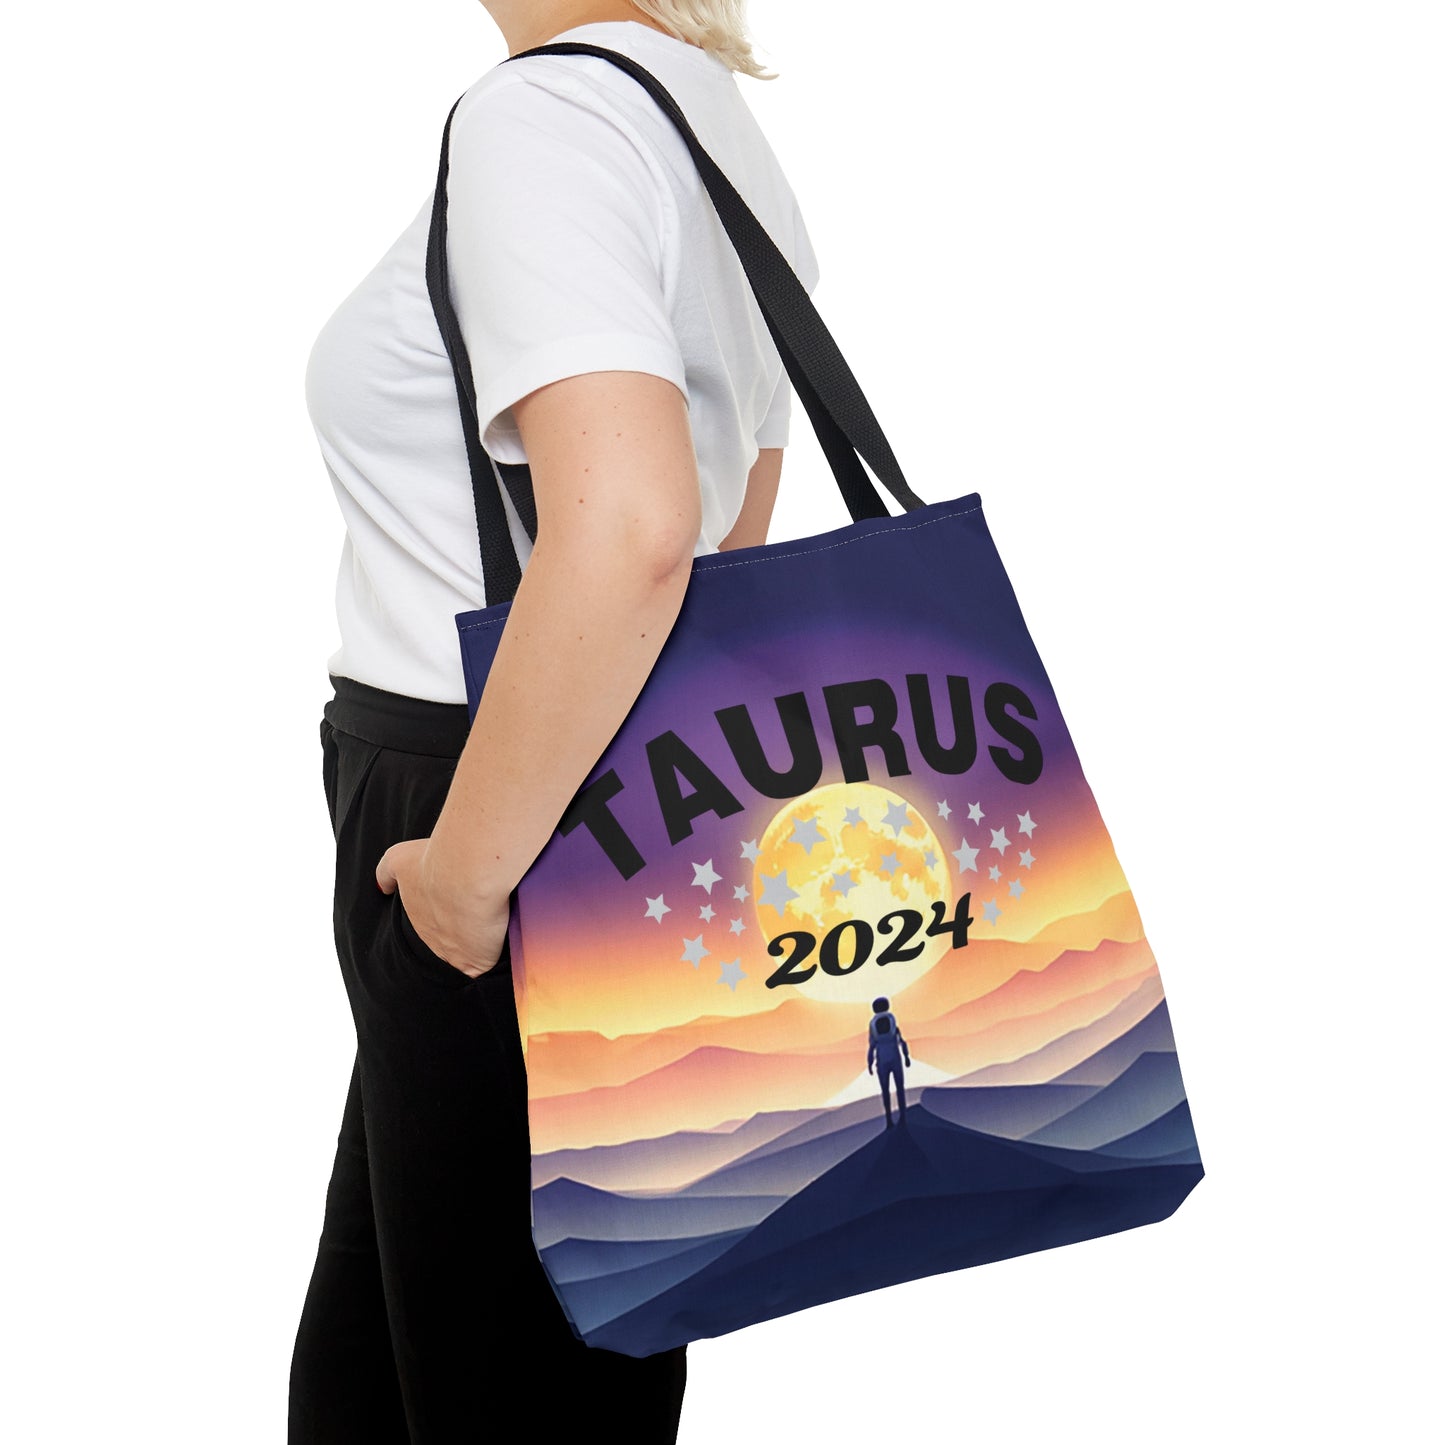 Taurus 2024 Tote Bag